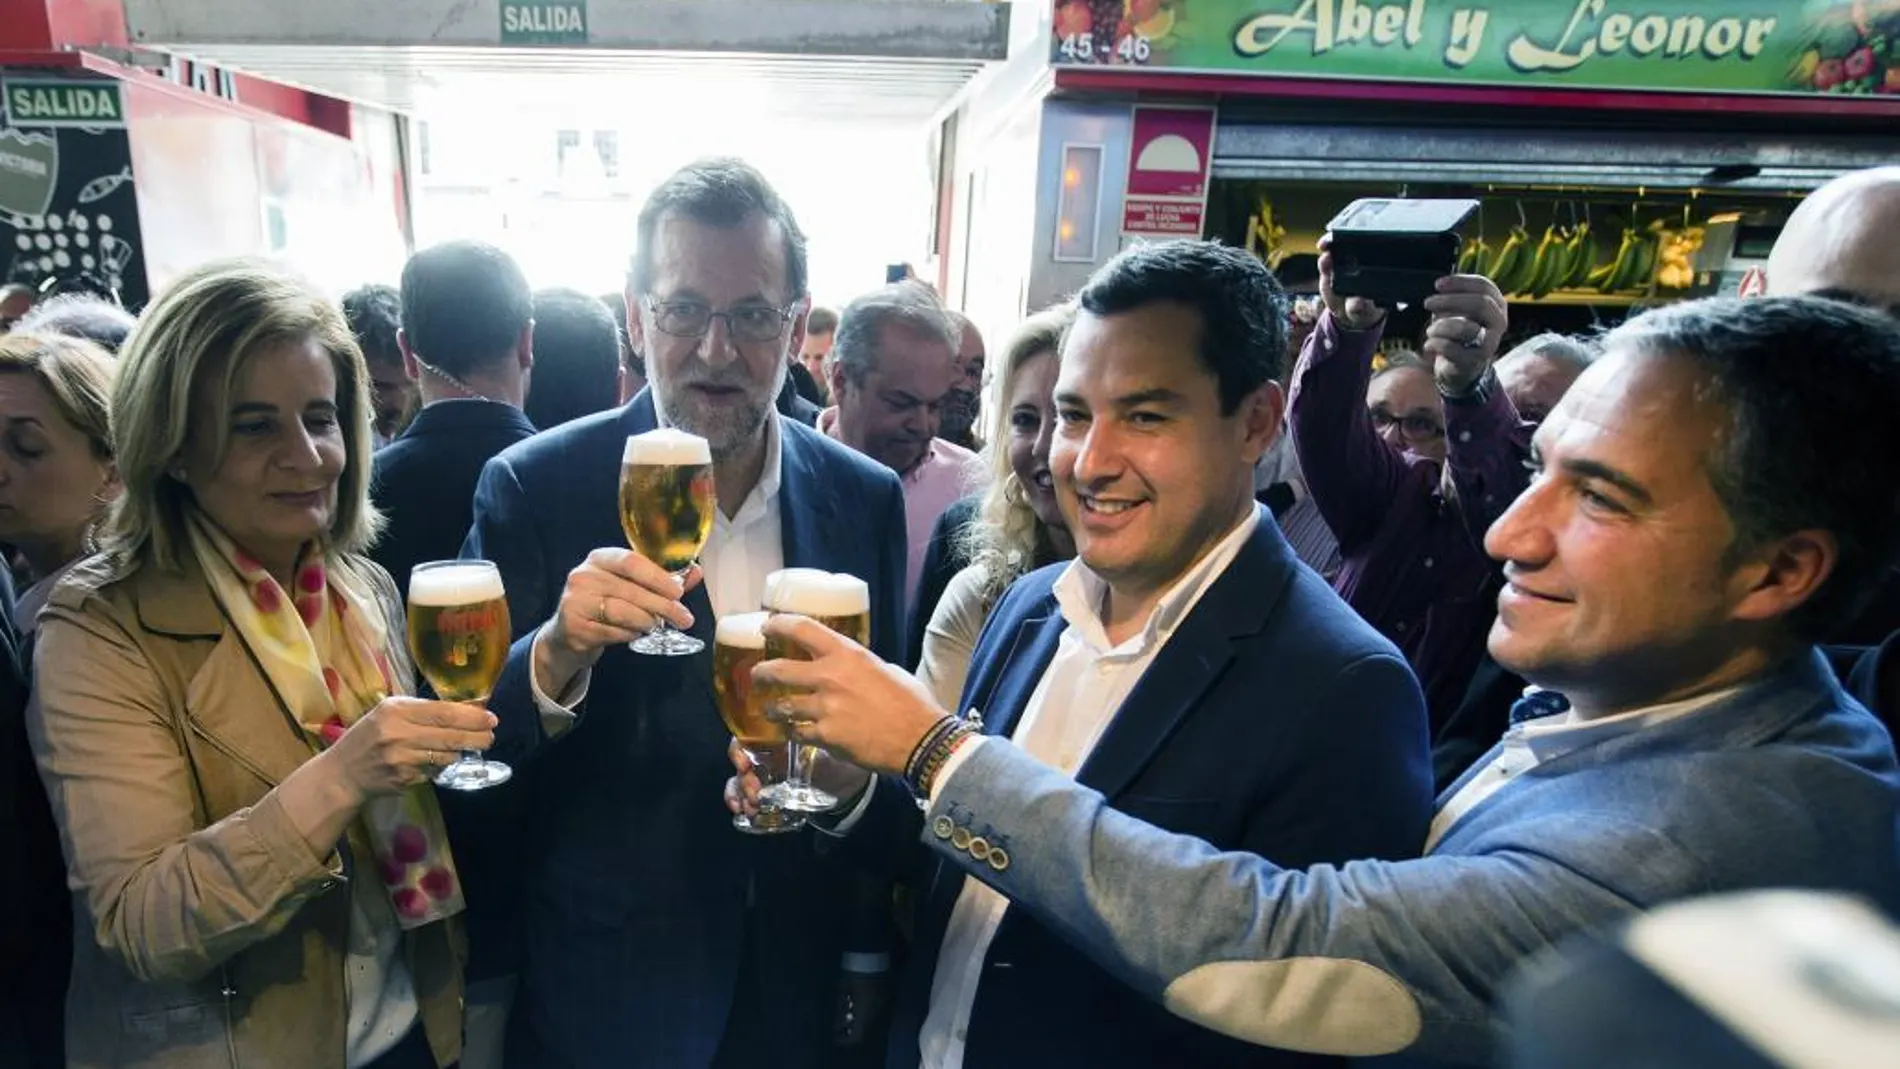 El presidente del Gobierno en funciones, Mariano Rajoy (c), el presidente del PP andaluz, Juanma Moreno (2d), la ministra de Empleo y Seguridad Social en funciones, Fátima Báñez (i) brindan con unas cañas de cerveza en el Mercado de Atarazana, durante el recorrido por el centro de Málaga.